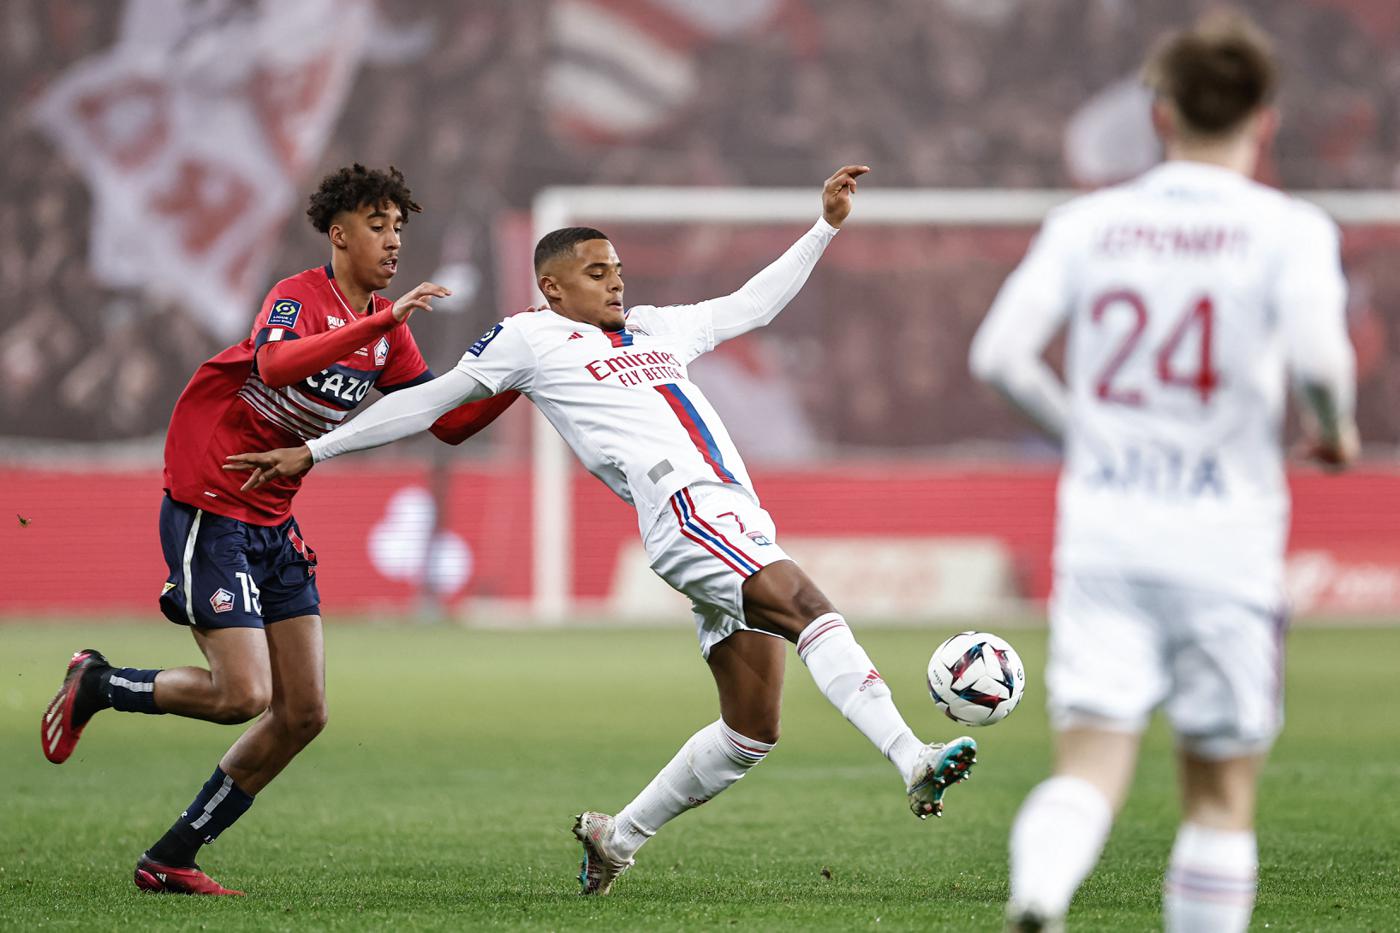 Lille v Lyon - 3-3. Liga Mistrzów UEFA, 27 kolejka. Przegląd meczu, statystyki.